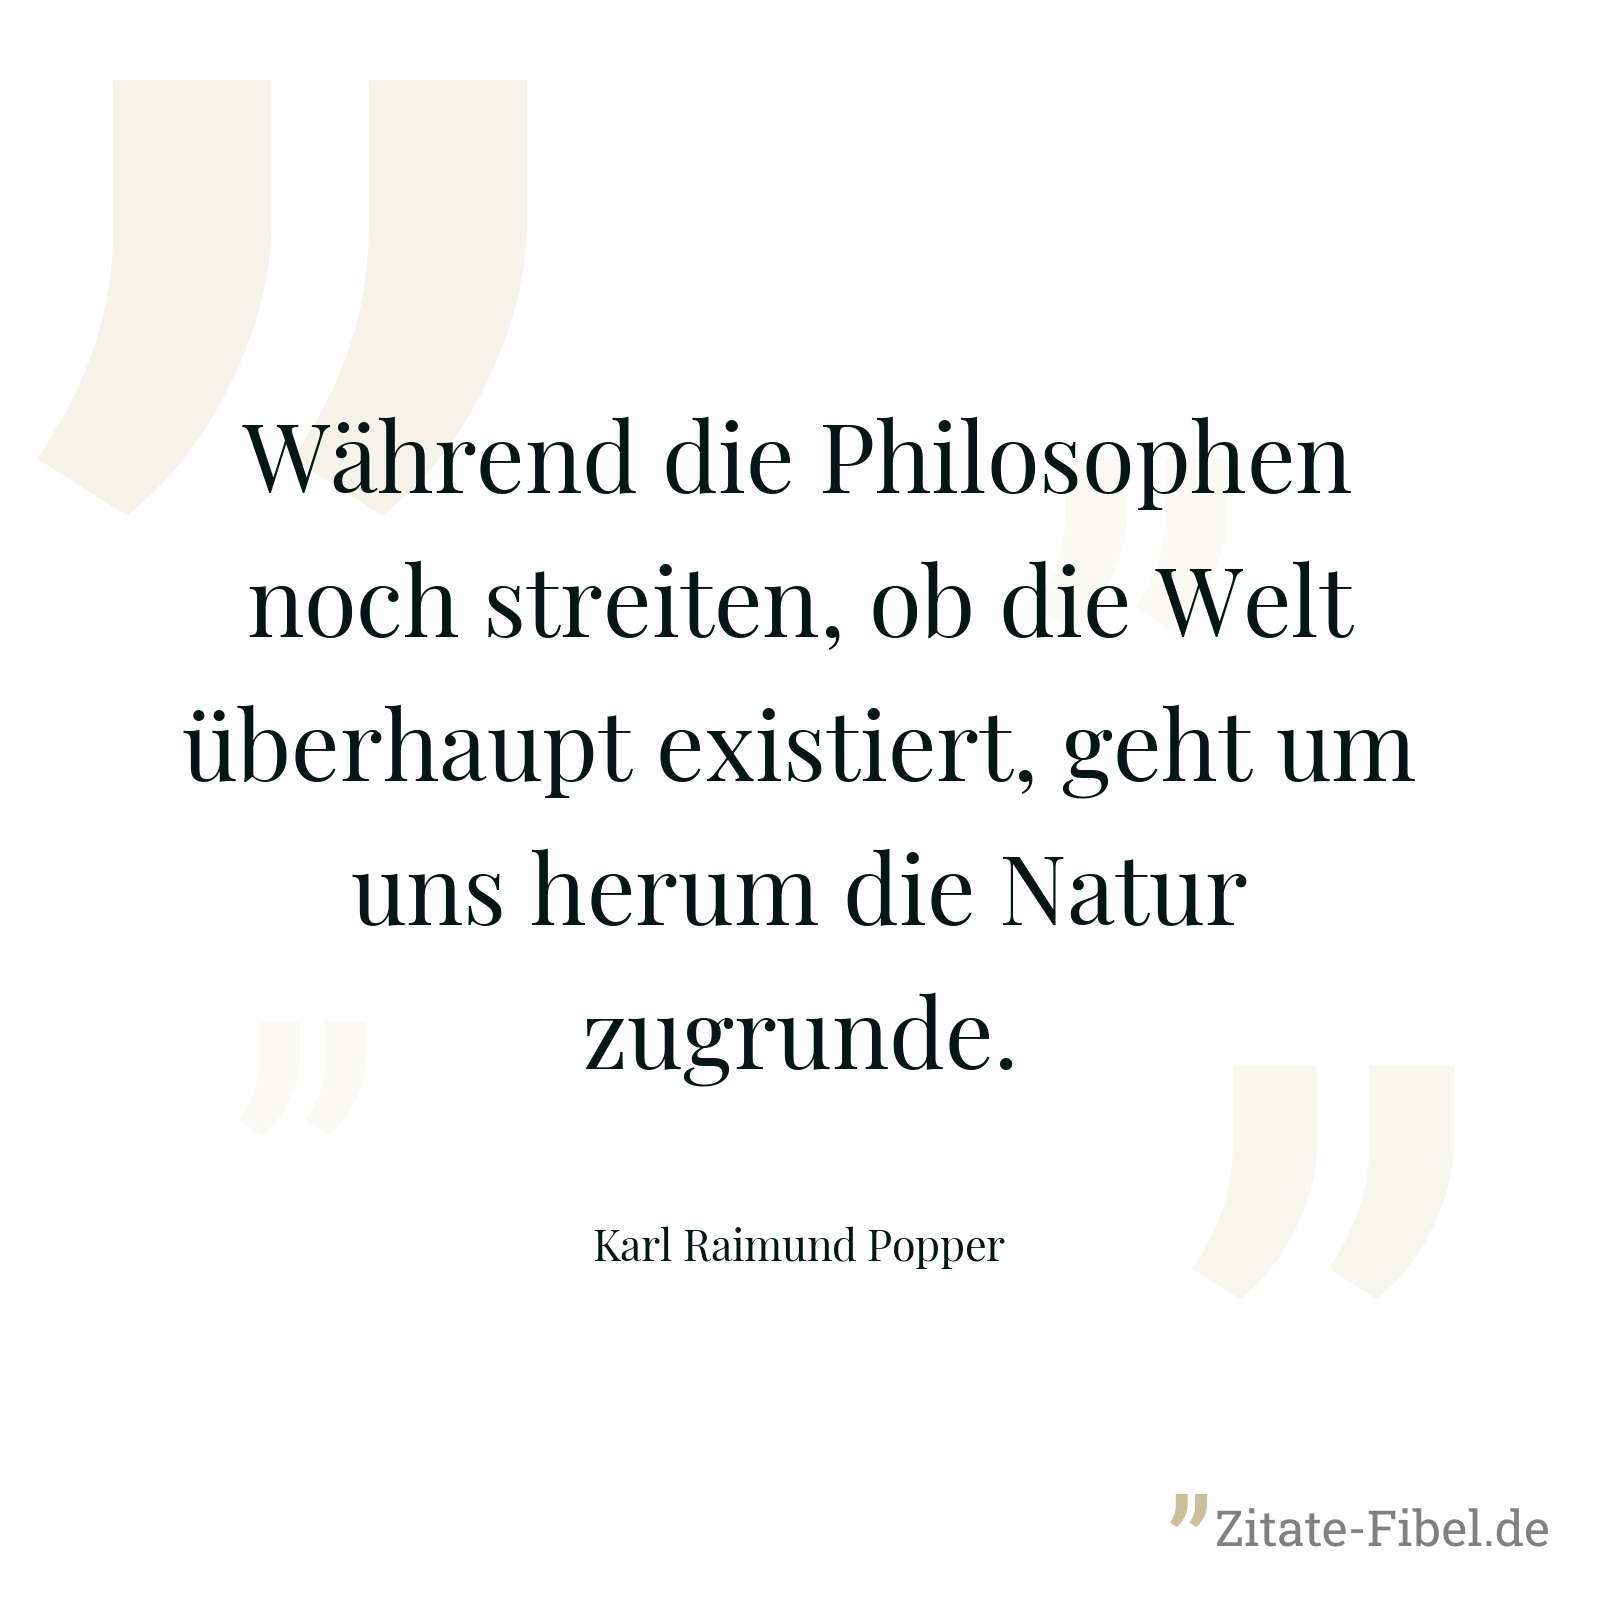 Während die Philosophen noch streiten, ob die Welt überhaupt existiert, geht um uns herum die Natur zugrunde. - Karl Raimund Popper